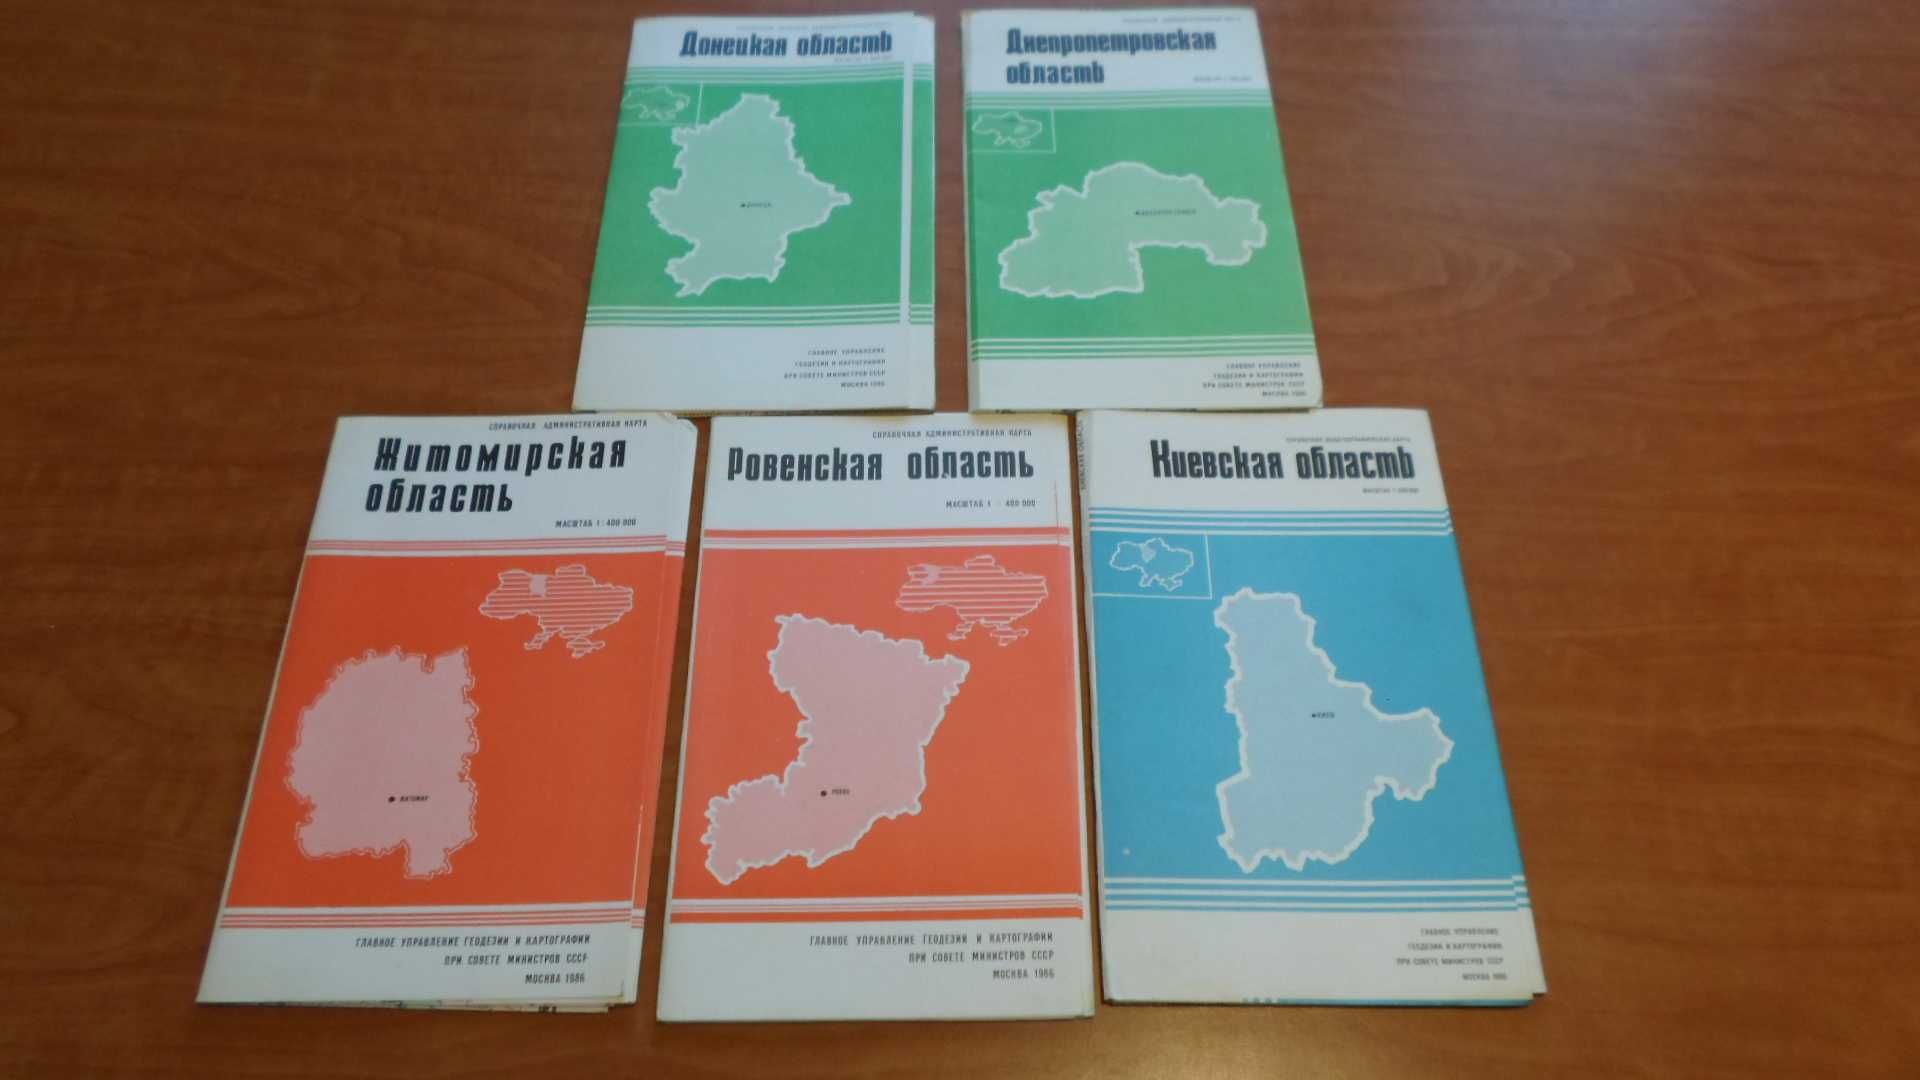 Донецкая область - справочная политико-административная карта 1986 г